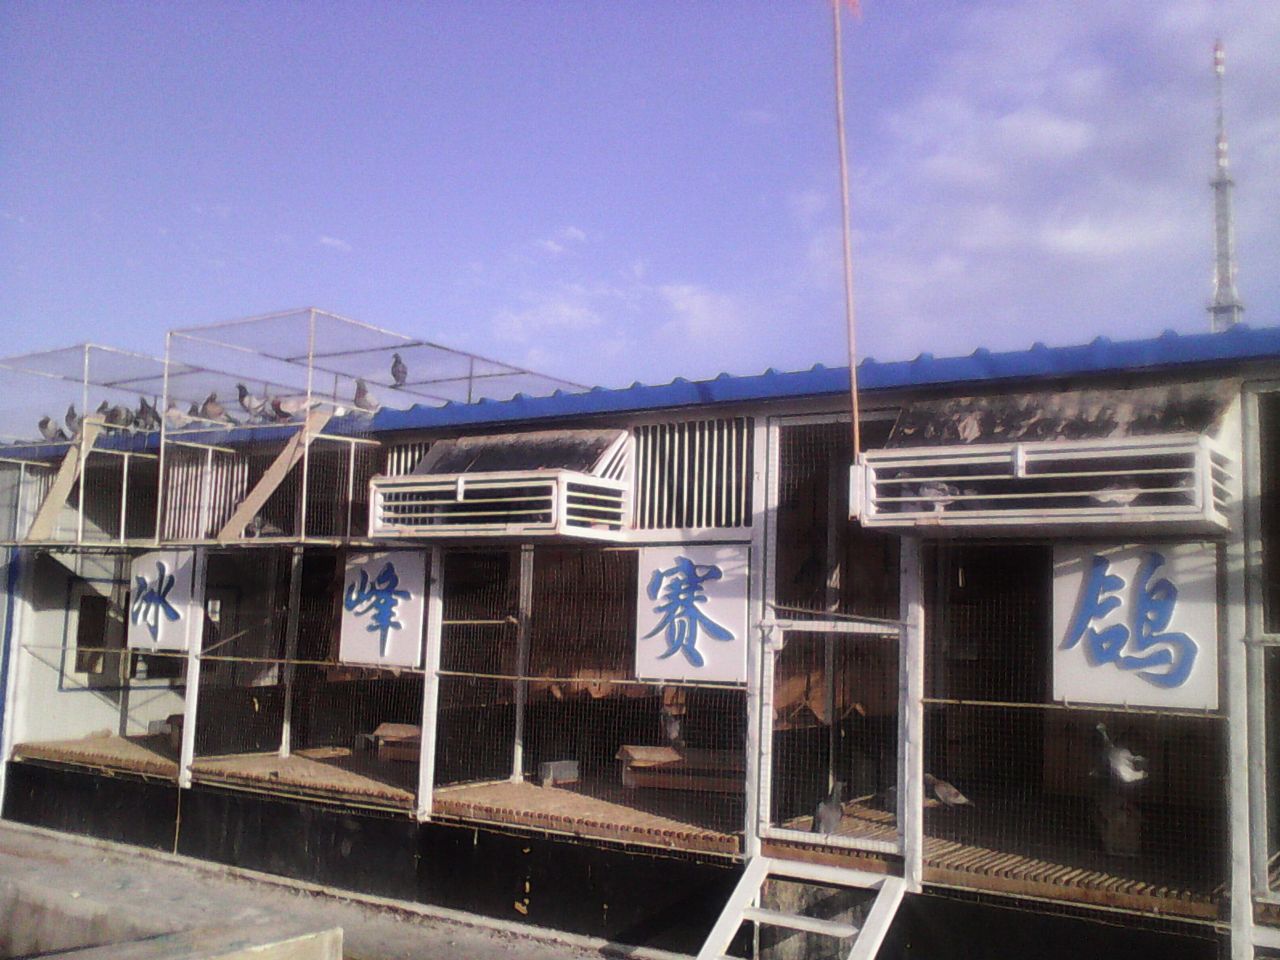 图片说明:新棚建于2013年;共有种鸽棚二间;赛鸽棚2间;幼鸽棚一